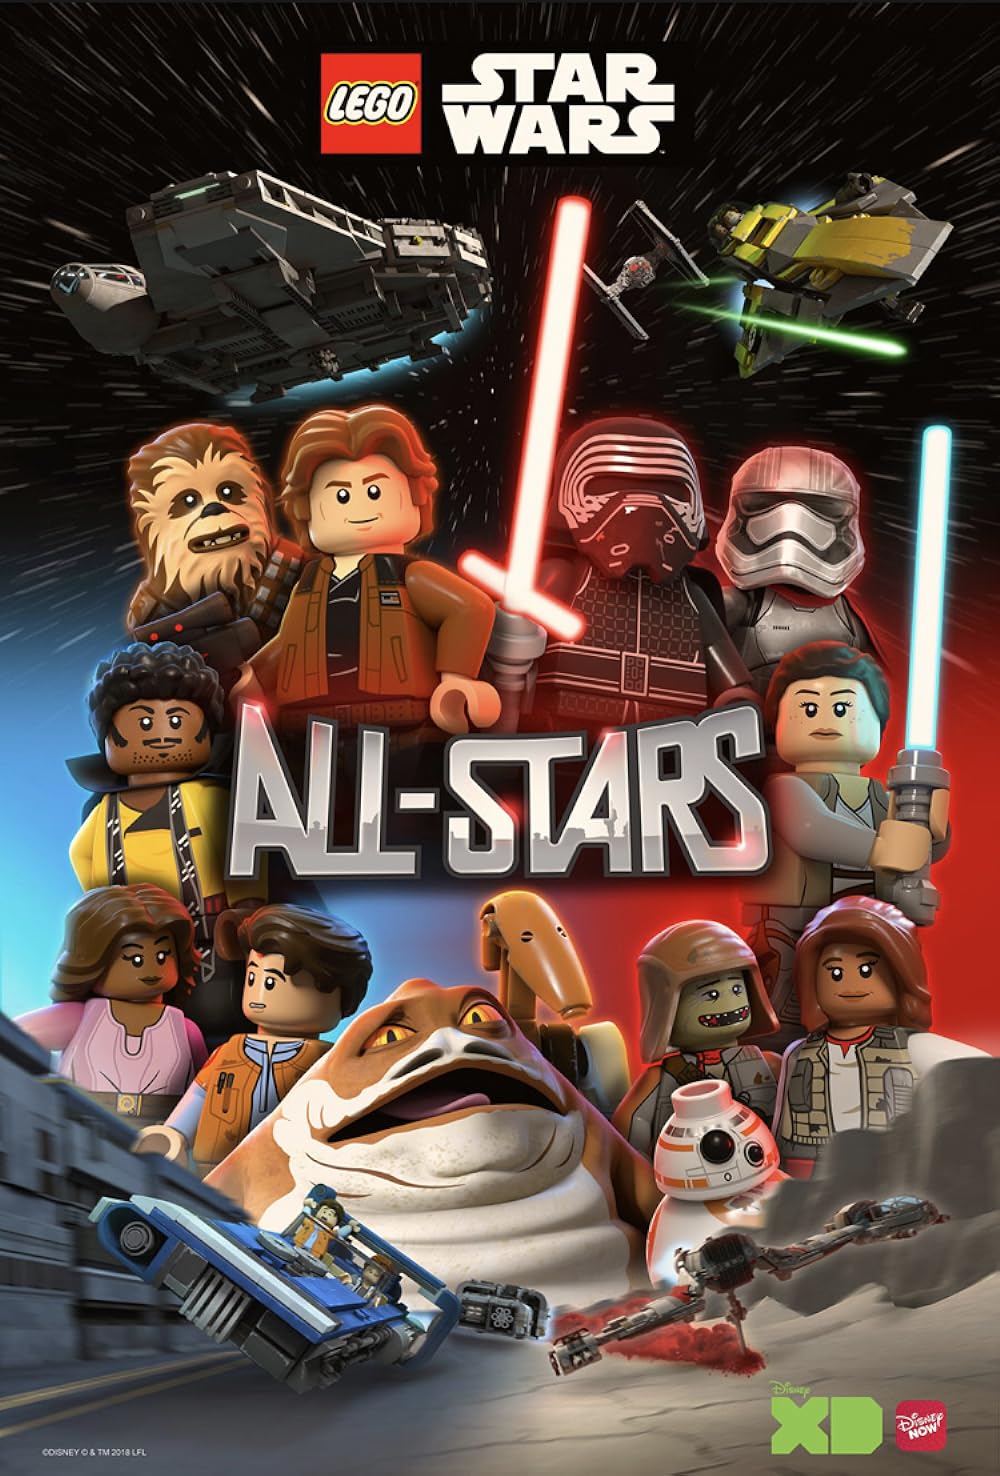 LEGO Star Wars: All-Stars